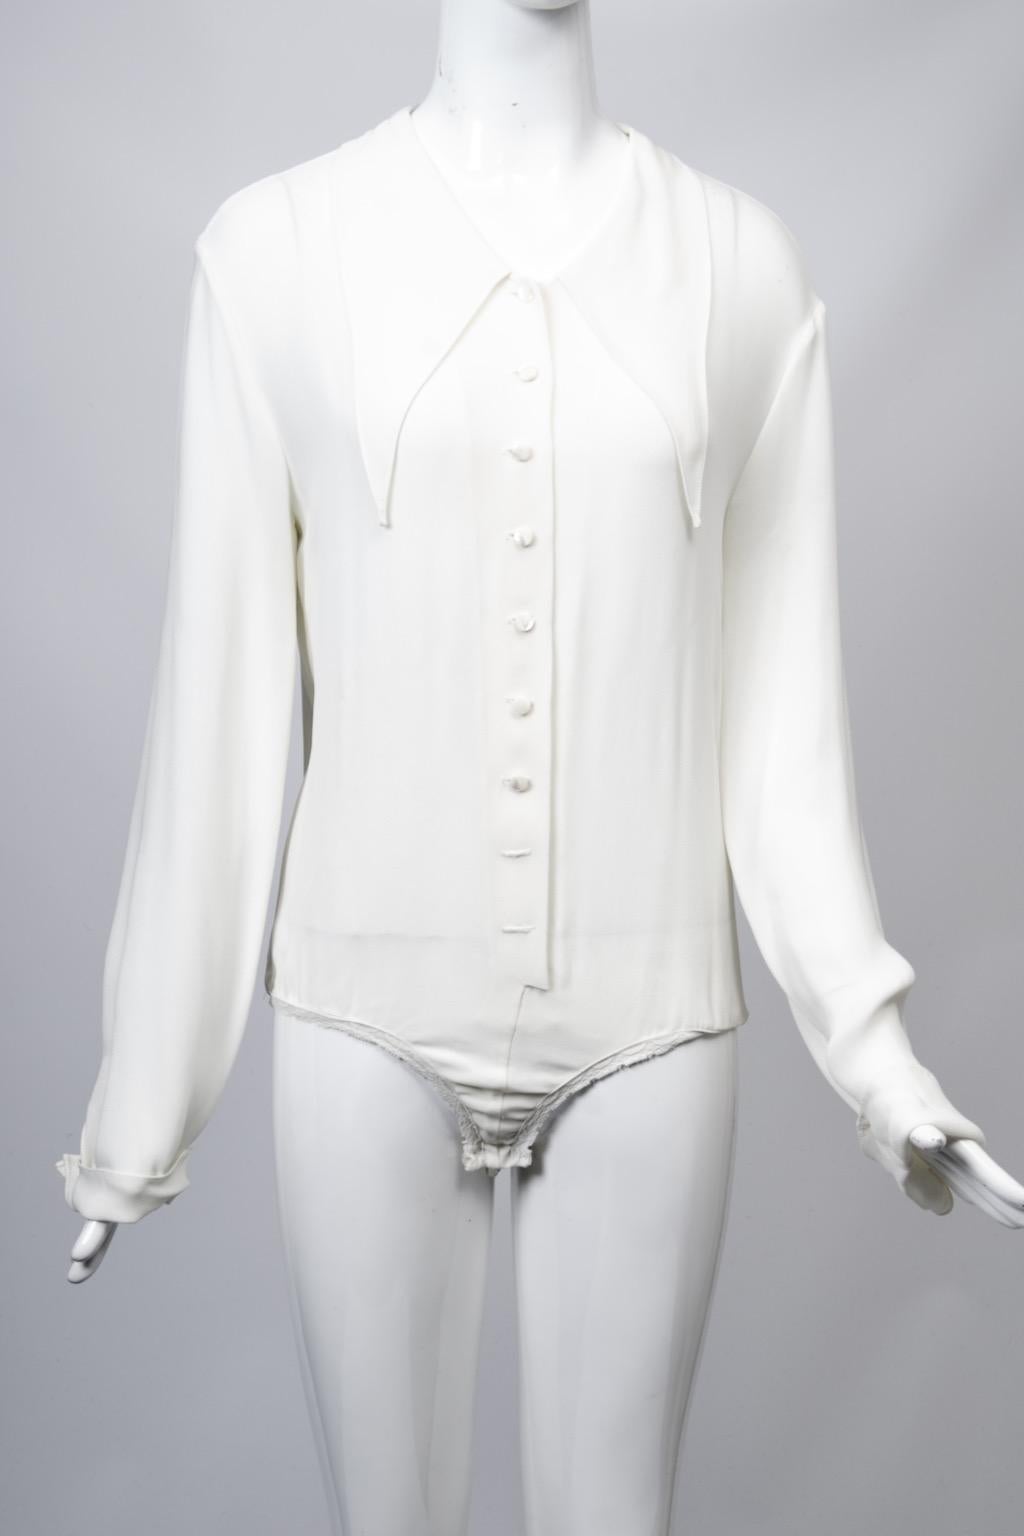 Donna Karan Vintage Jumper and Bodysuit For Sale 8